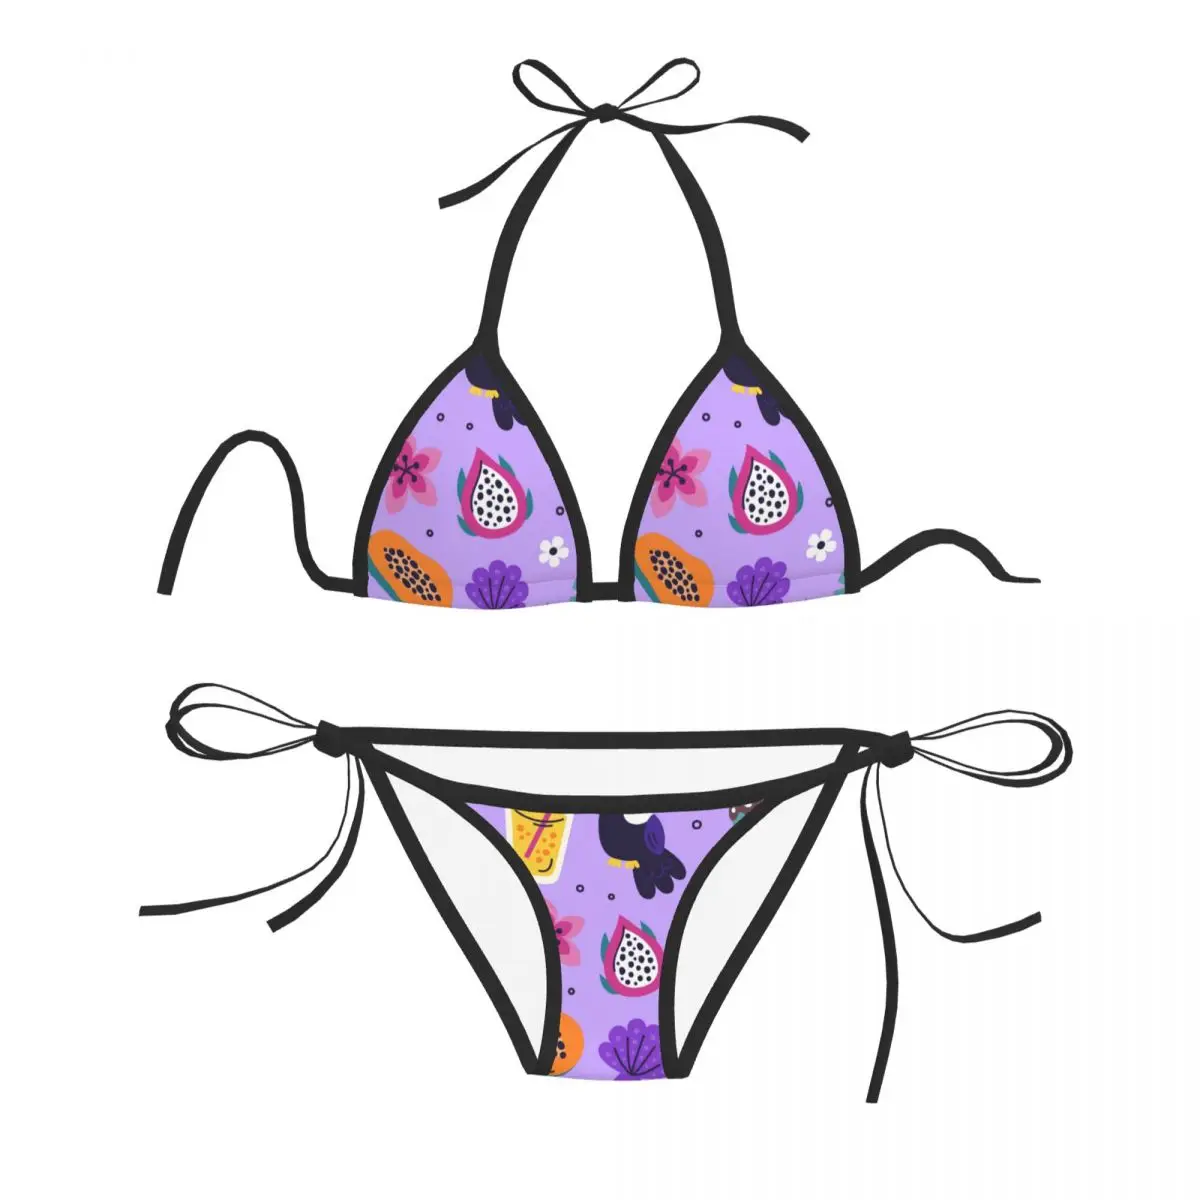 

Женский сексуальный комплект бикини с бюстгальтером пуш-ап, Холтер, стринги, бразильский купальник, одежда для купания, пляжная одежда, Купальный бюстгальтер с попугаями, летняя папайя